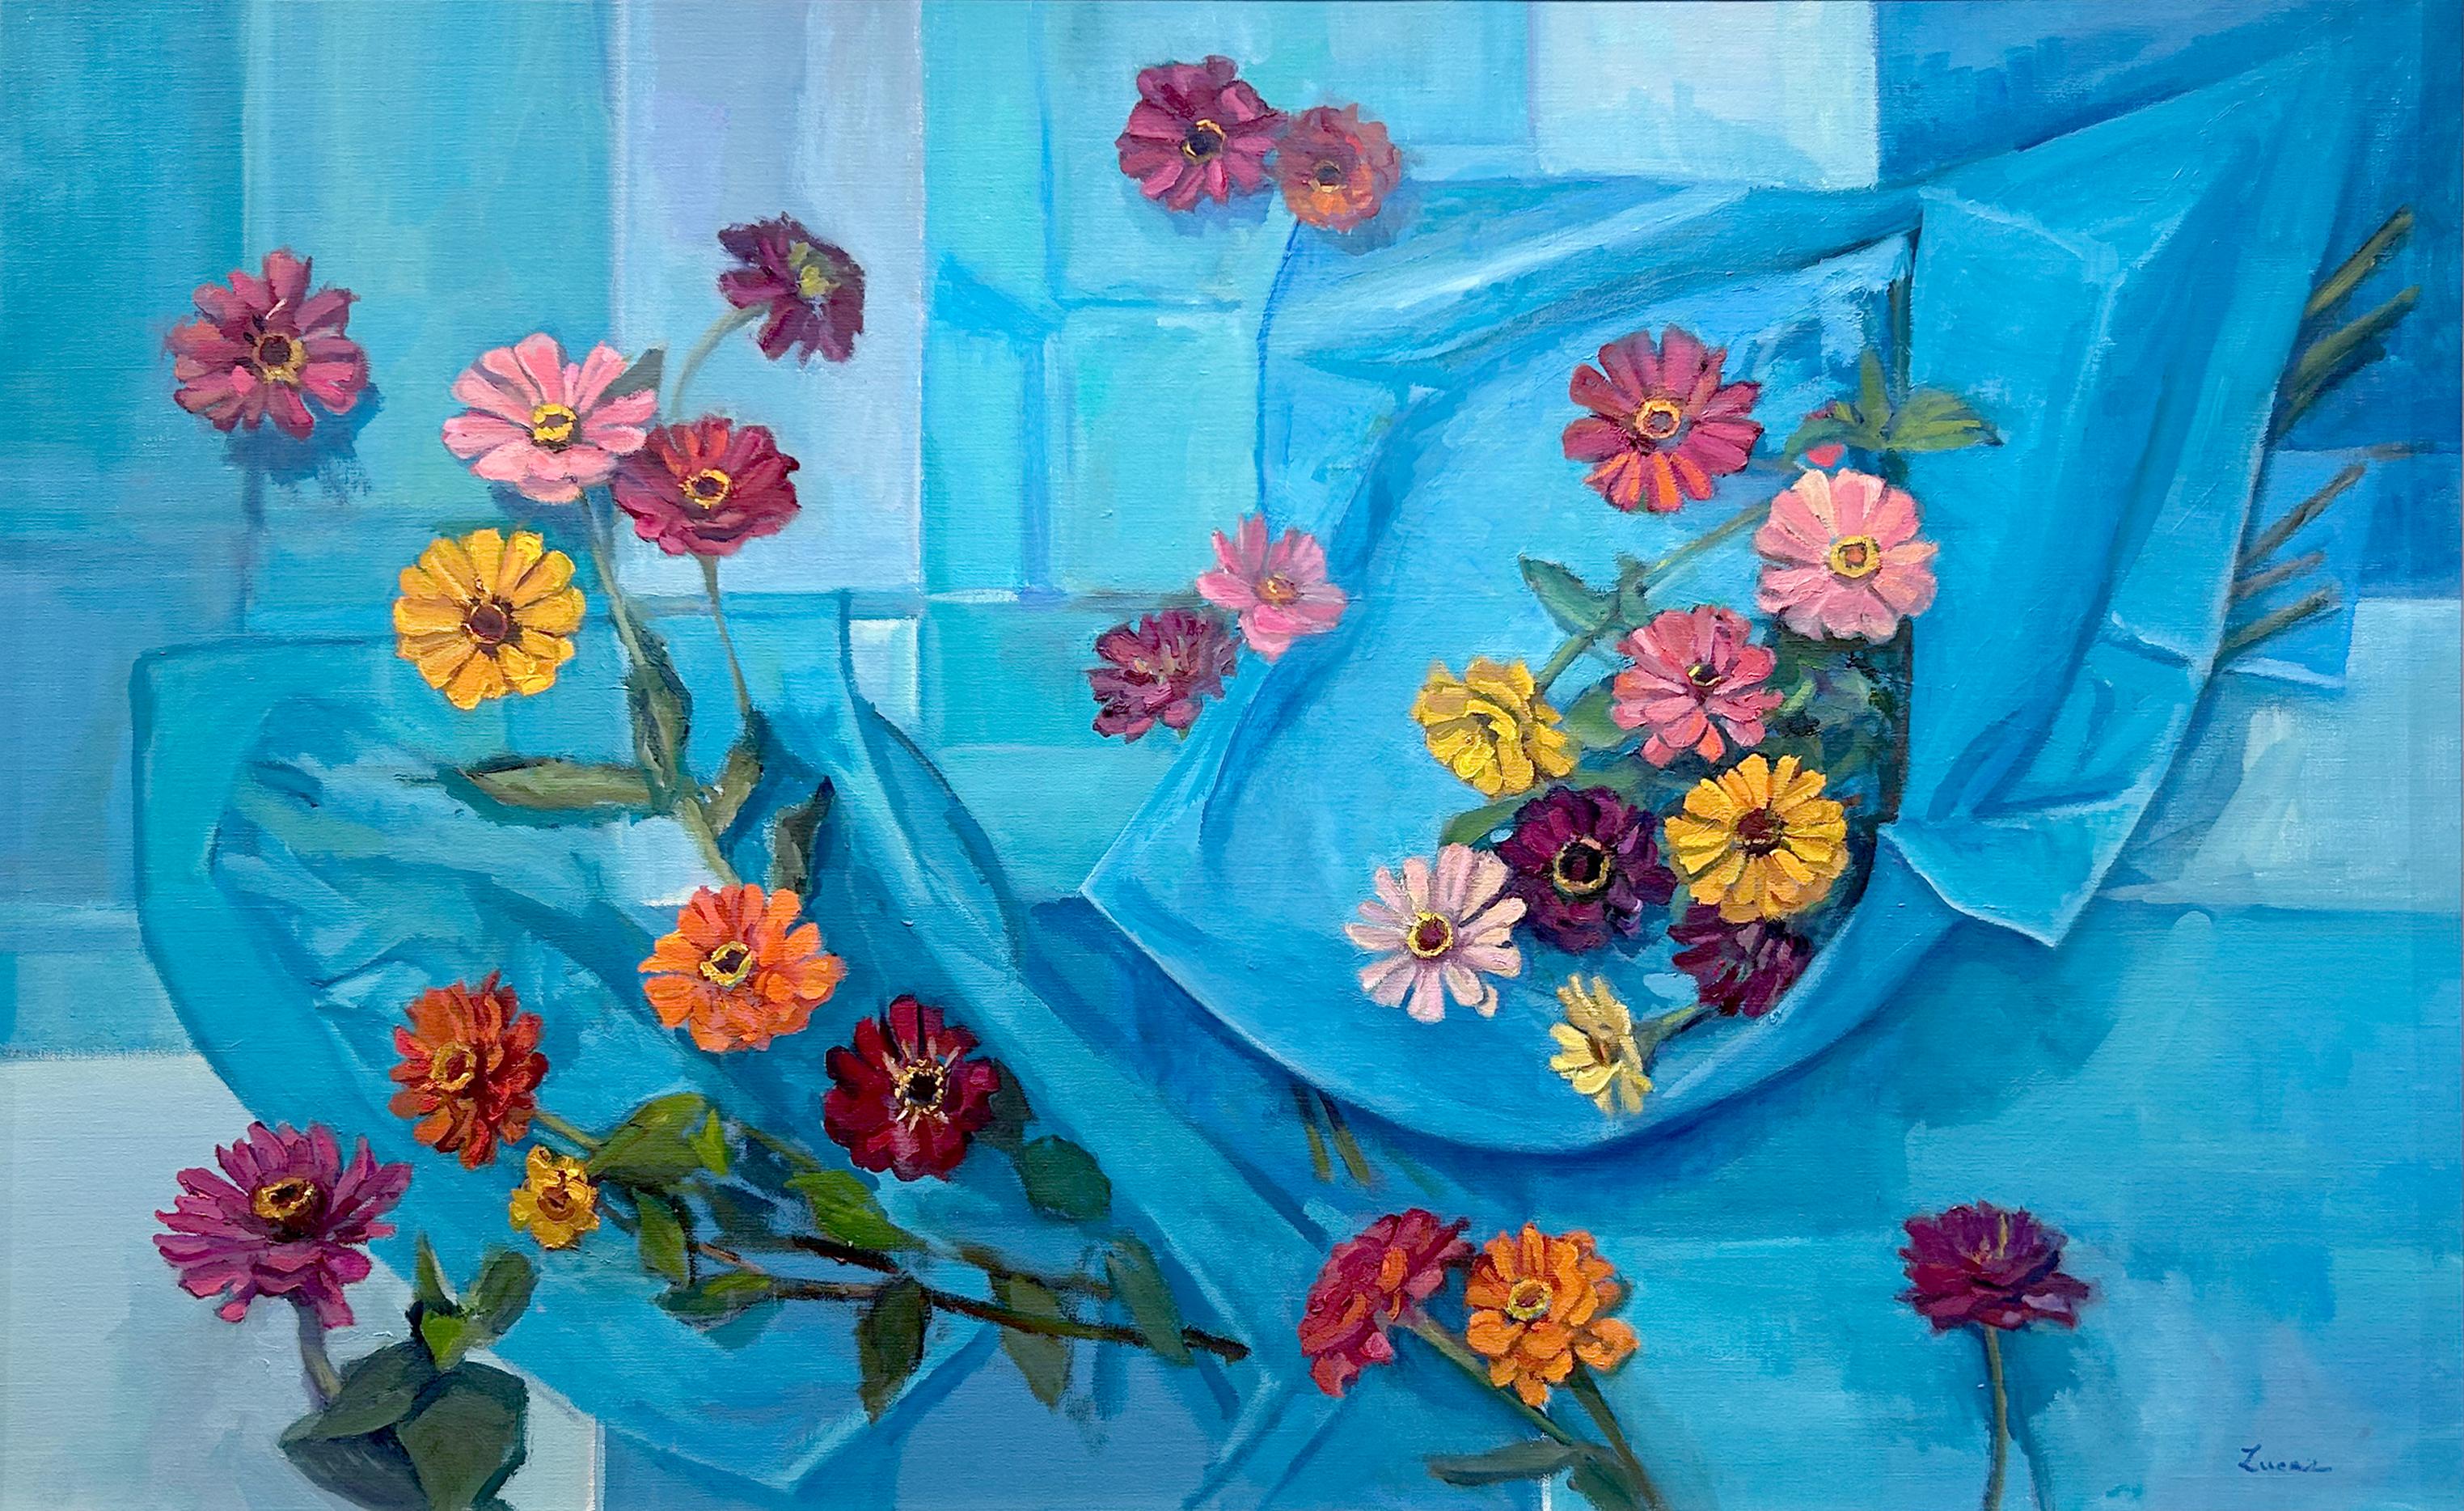 Dieses helle und farbenfrohe Blumengemälde, "Out of the Blue", ist ein 30x48 Ölgemälde auf Leinwand von Maryann Lucas.  Zu sehen ist eine Draufsicht auf einen blauen Hintergrund, der mit Seidenpapier und einem bunten Arrangement aus Zinnien in Rosa,